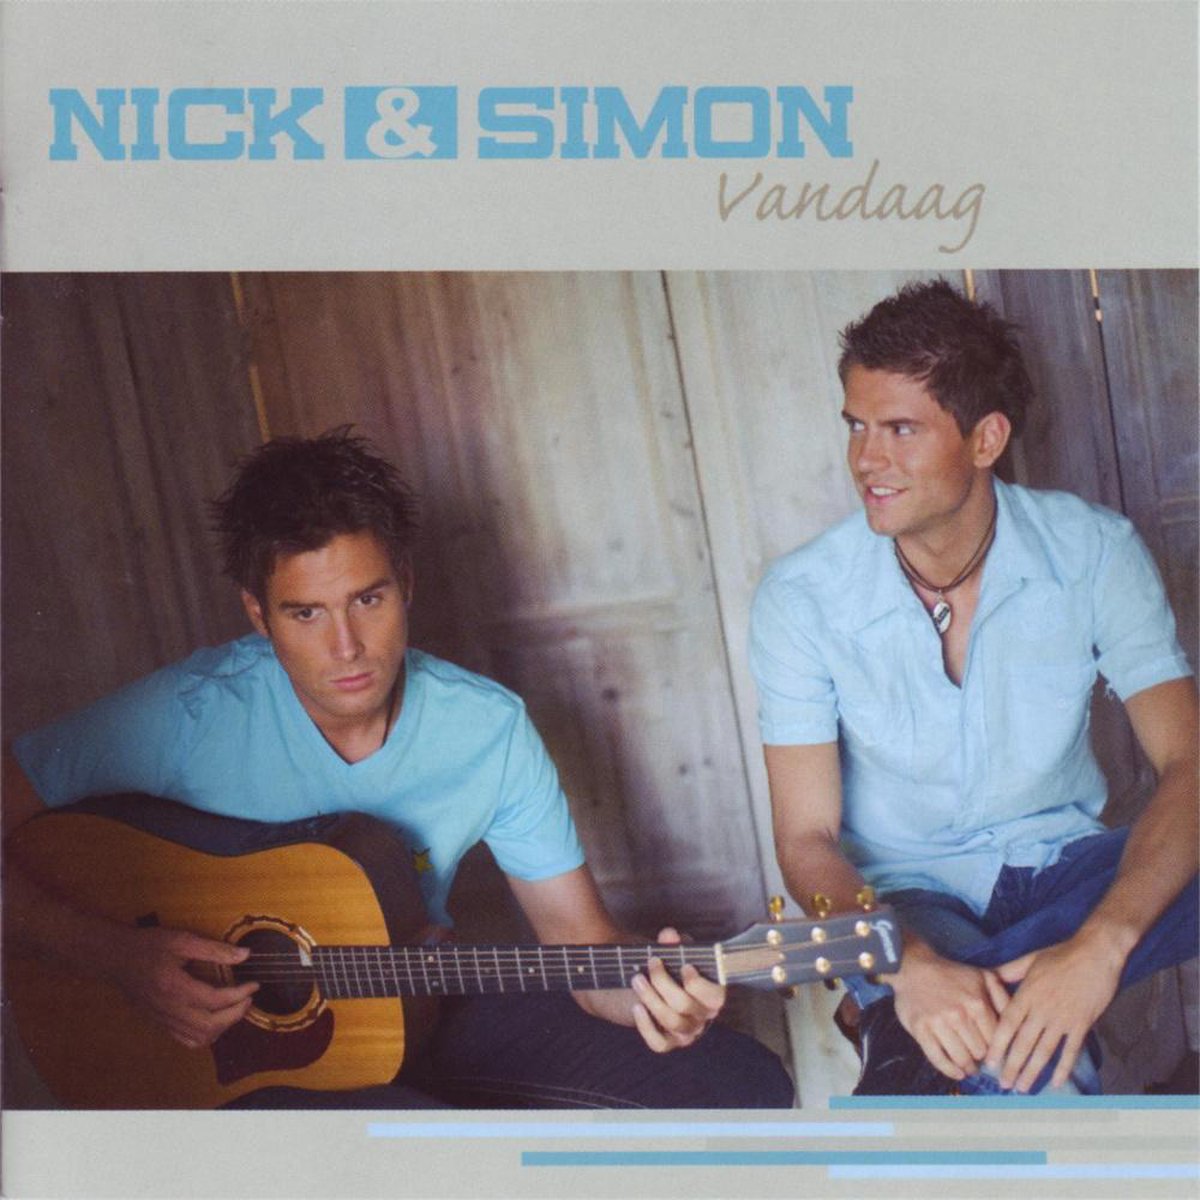 Nick & Simon - Vandaag - Nick & Simon